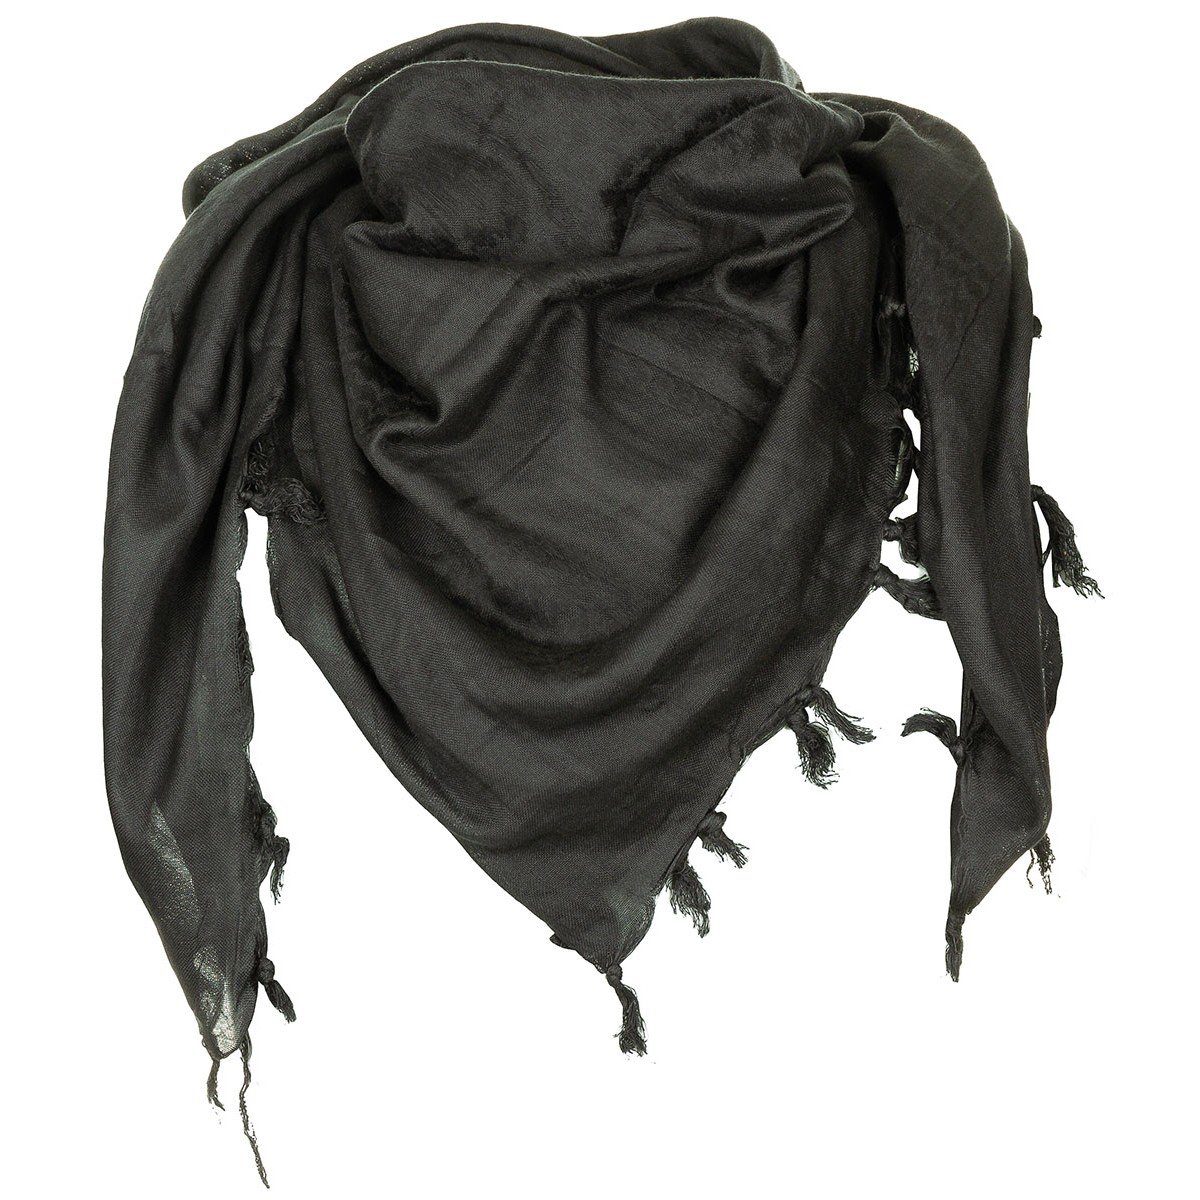 MFH Halstuch angenehm Supersoft, zu PLO und Tuch, tragen Shemagh, fein schwarz gewebt